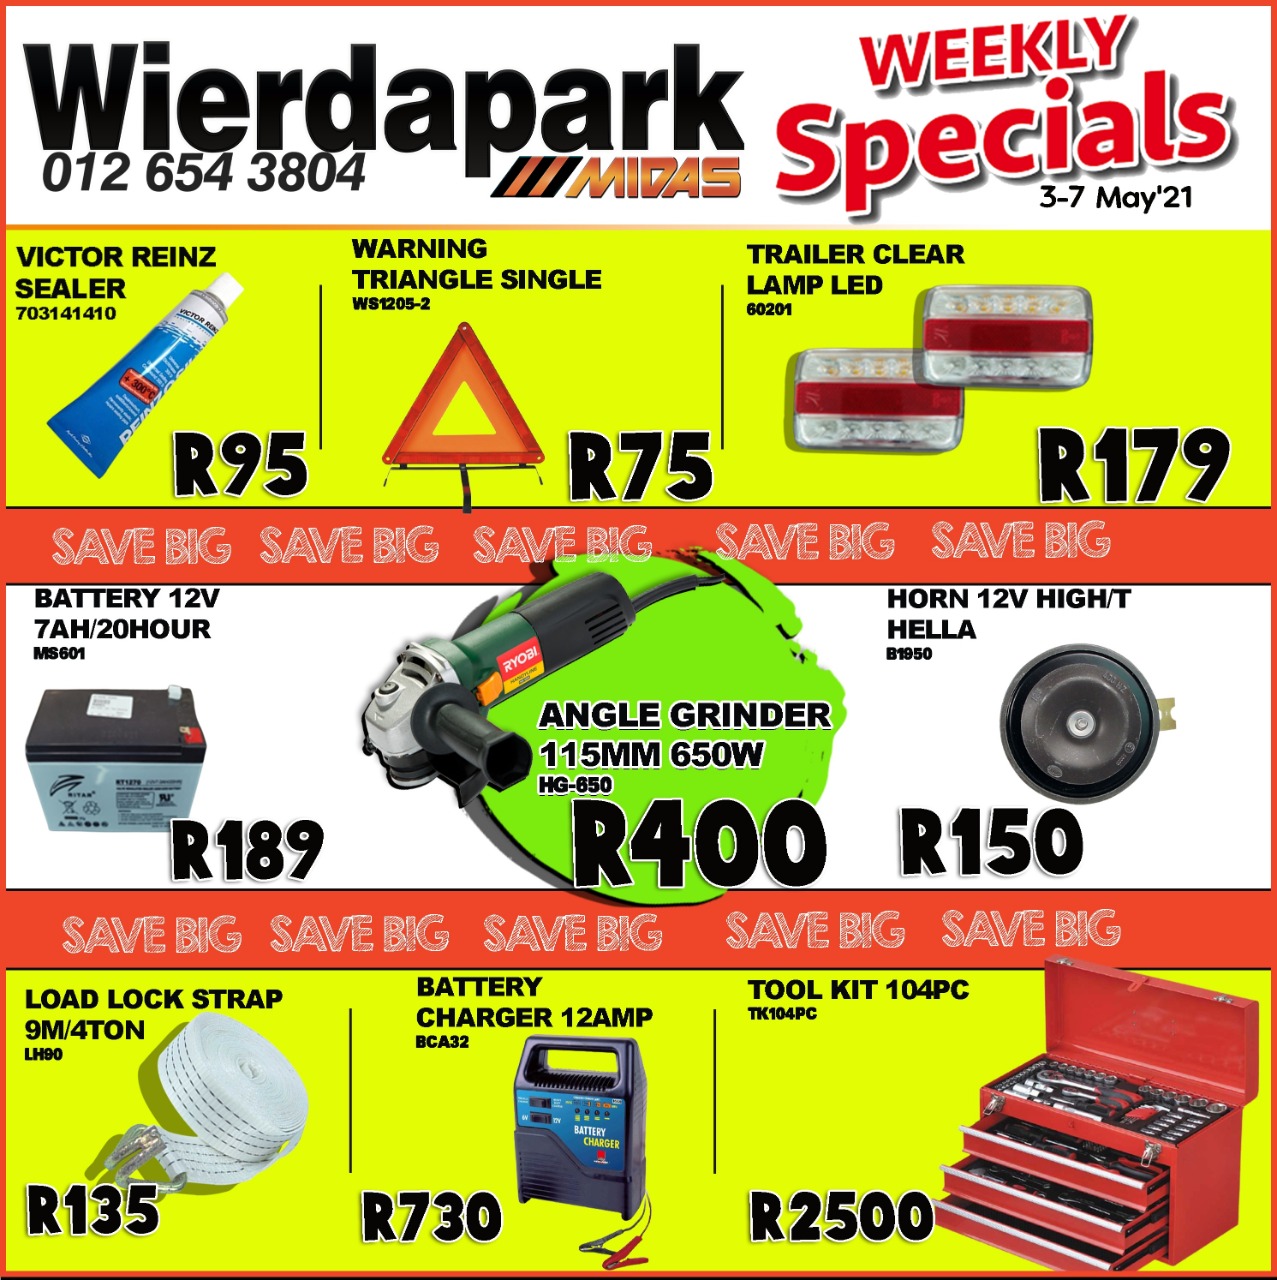 Weekly Specials now on at Wierdapark Midas! 